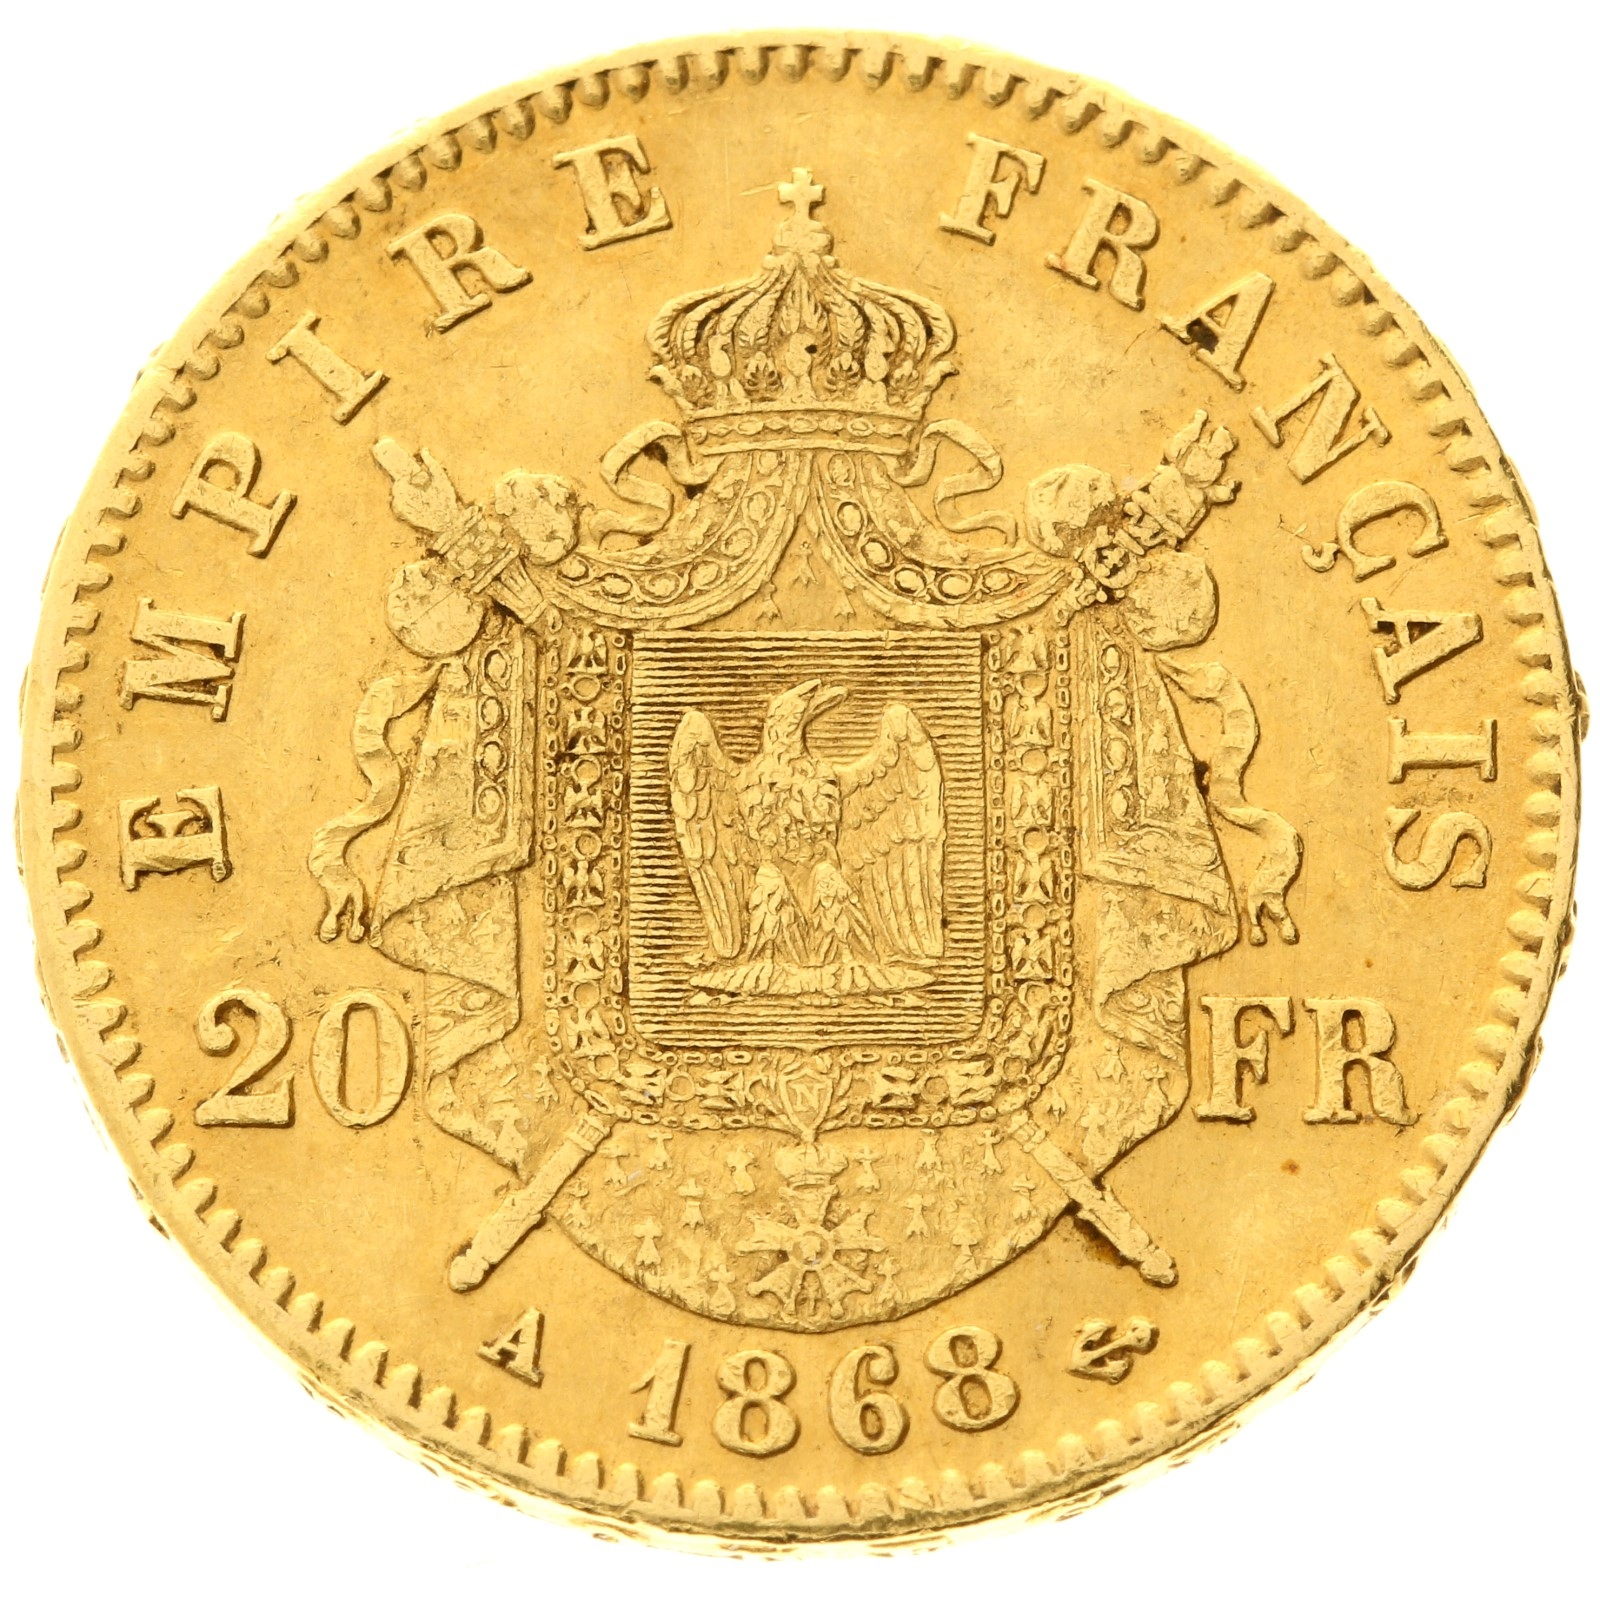 France - 20 francs - 1868 - A - Napoleon III